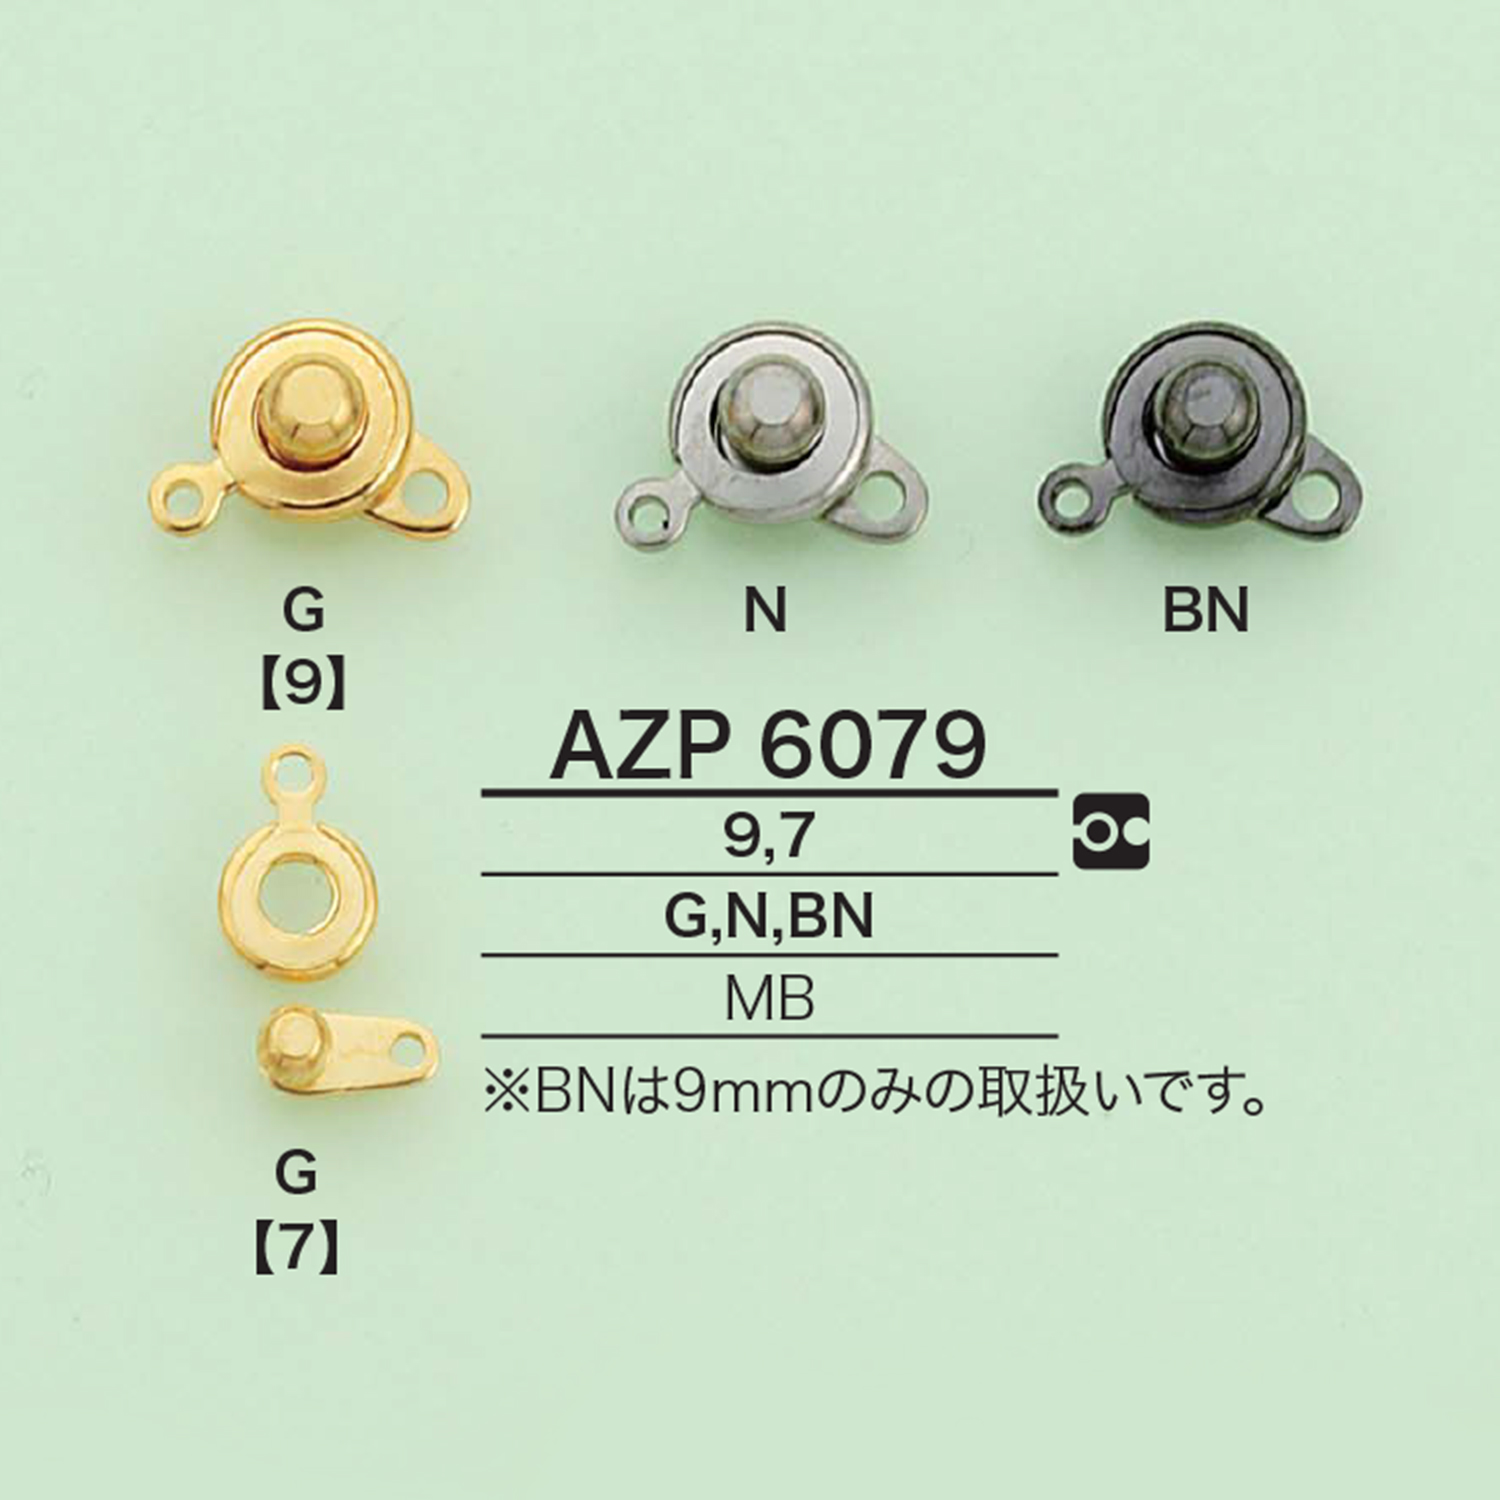 AZP6079 新钩子[杂货等] 爱丽丝纽扣